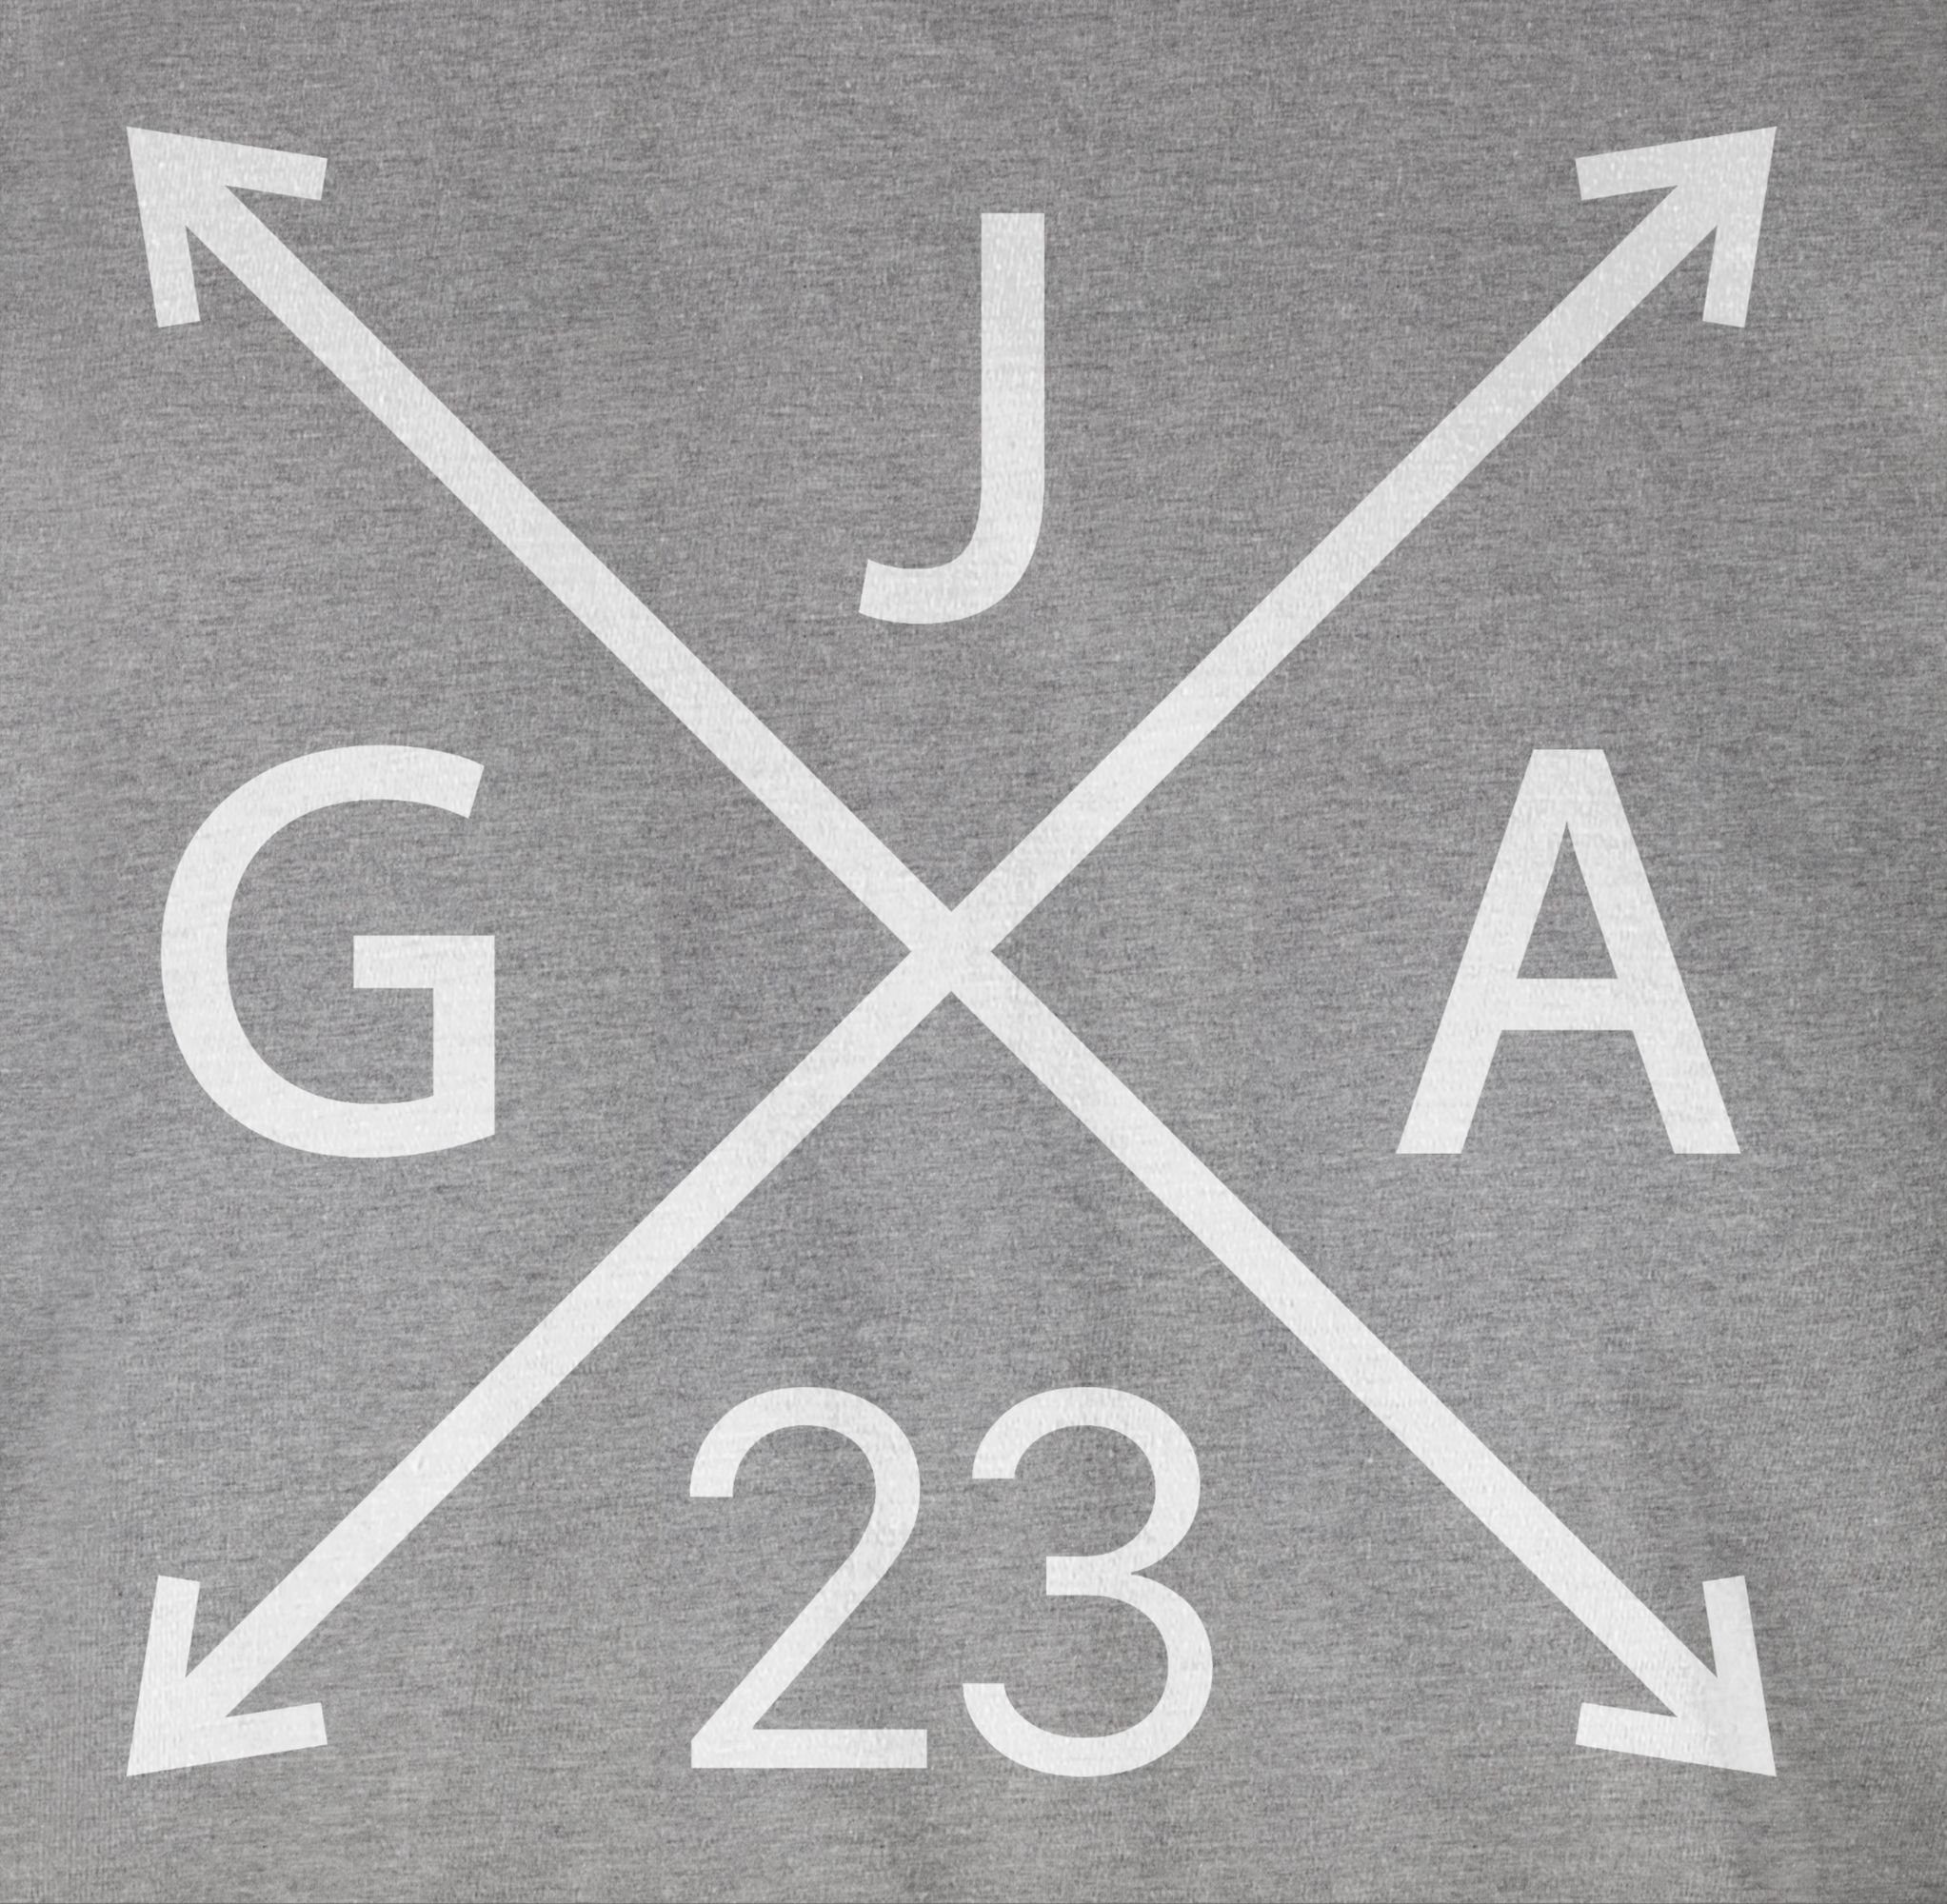 Shirtracer T-Shirt JGA meliert JGA Männer 03 Grau 2023